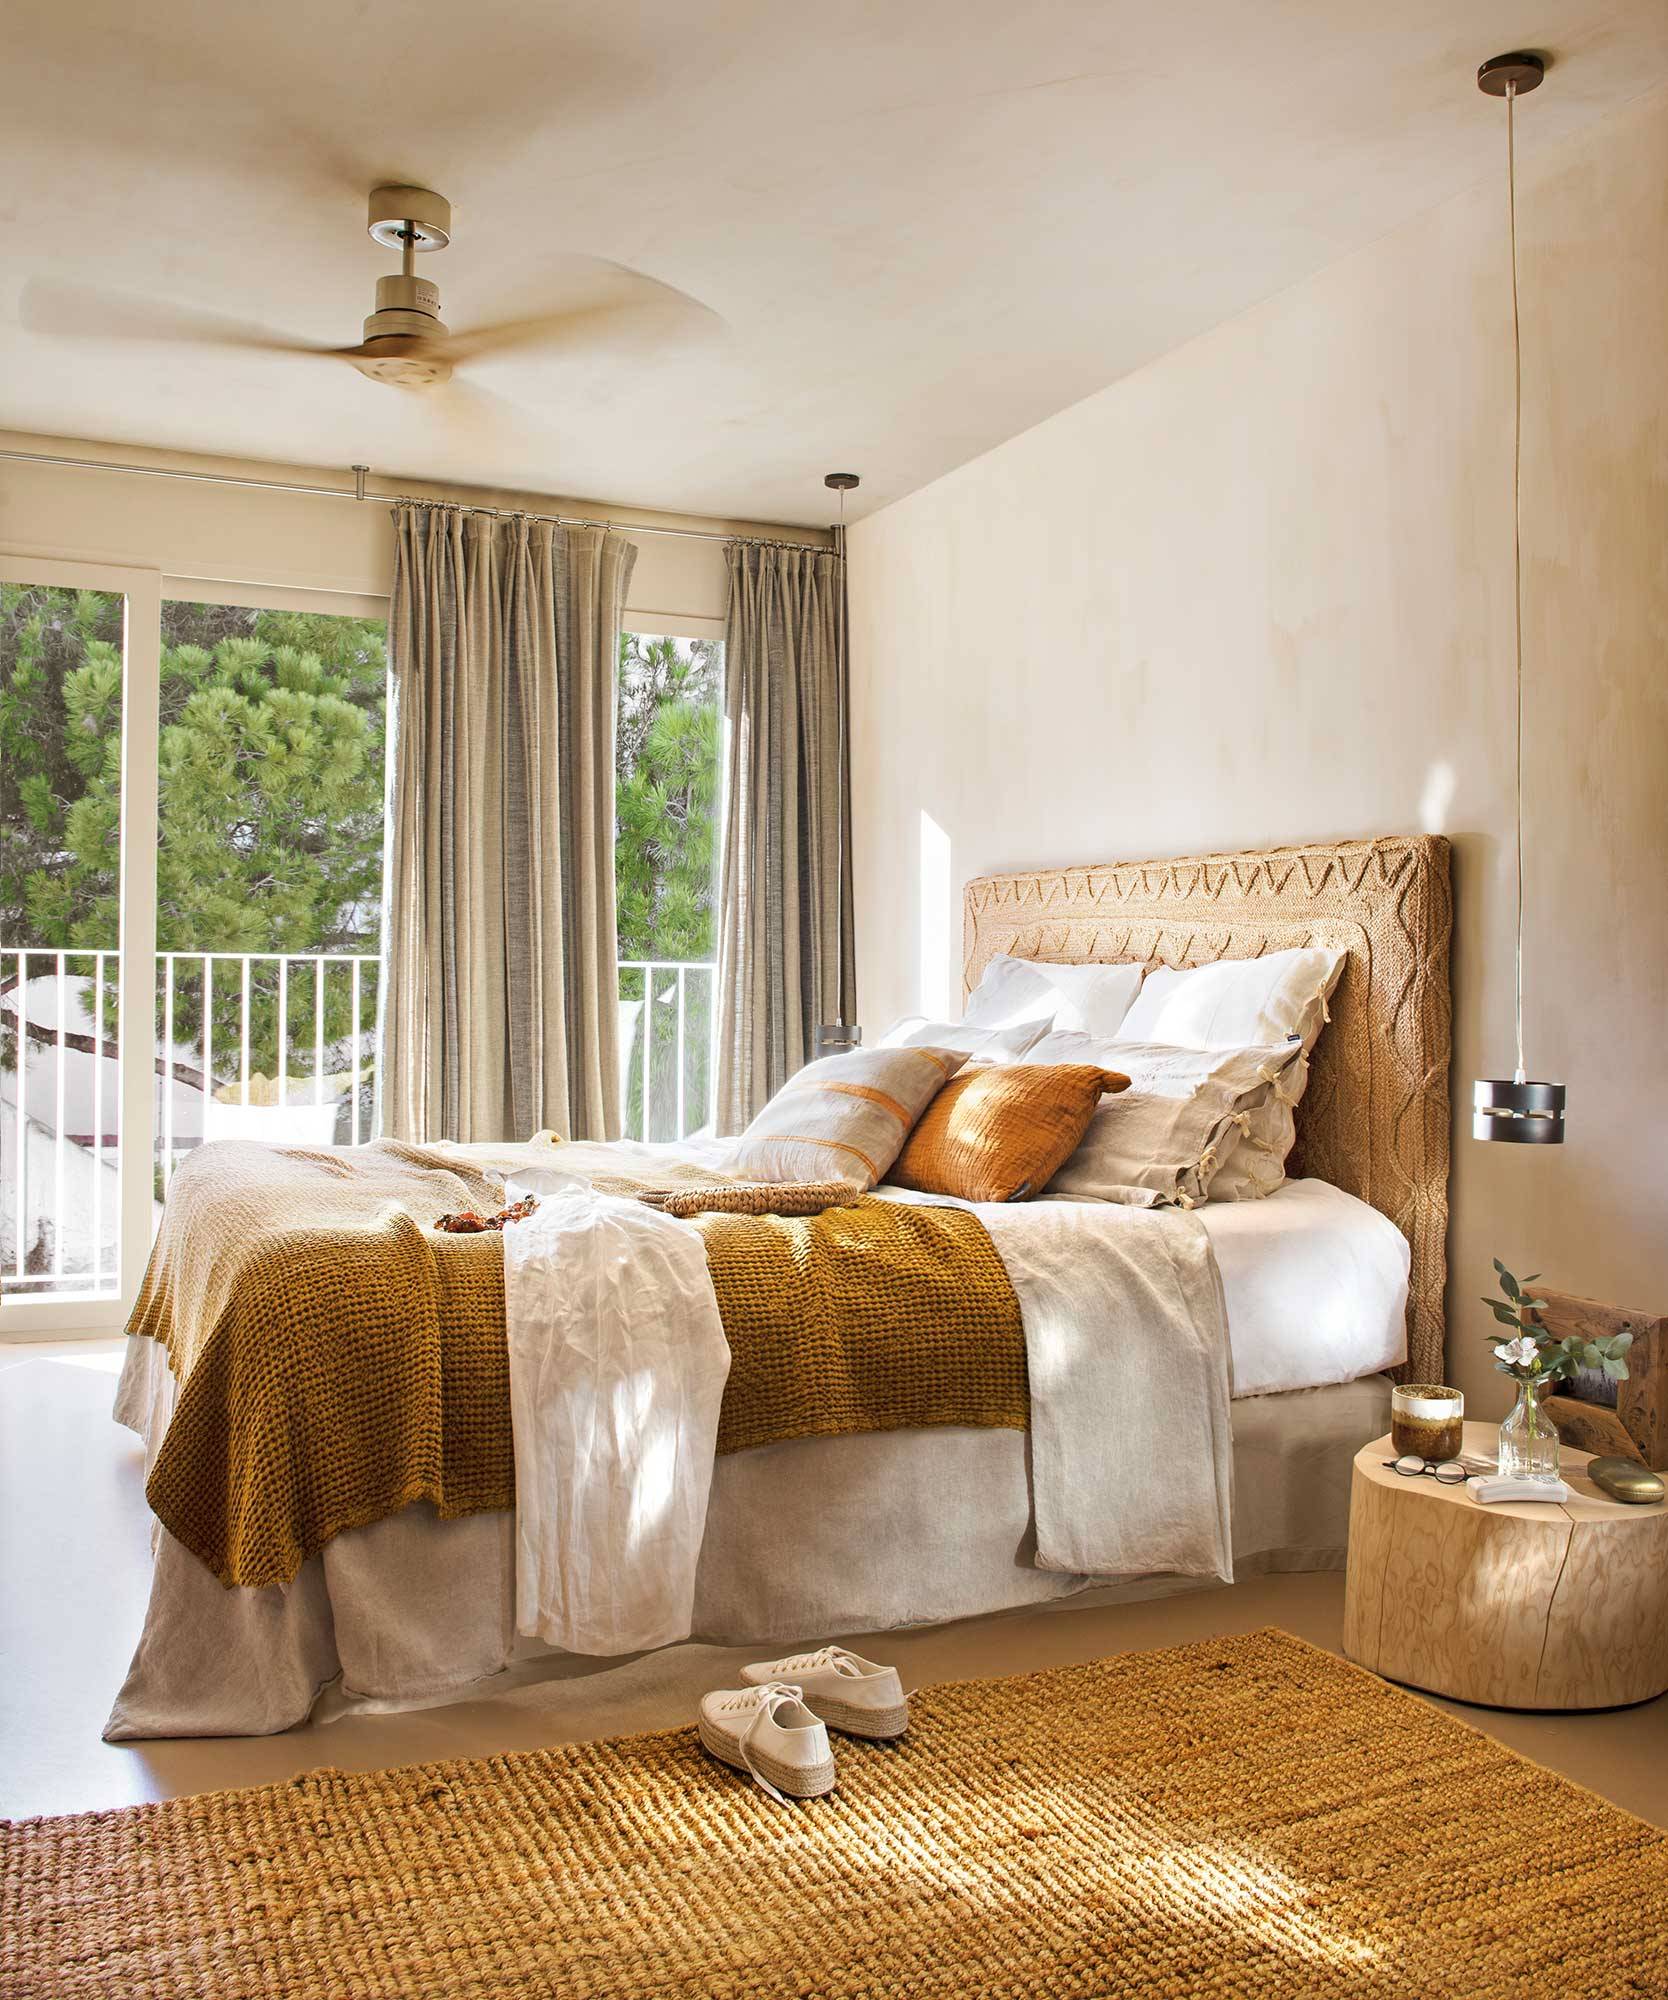 Dormitorio en tonos arena muy natural y cabecero de fibras 00525493